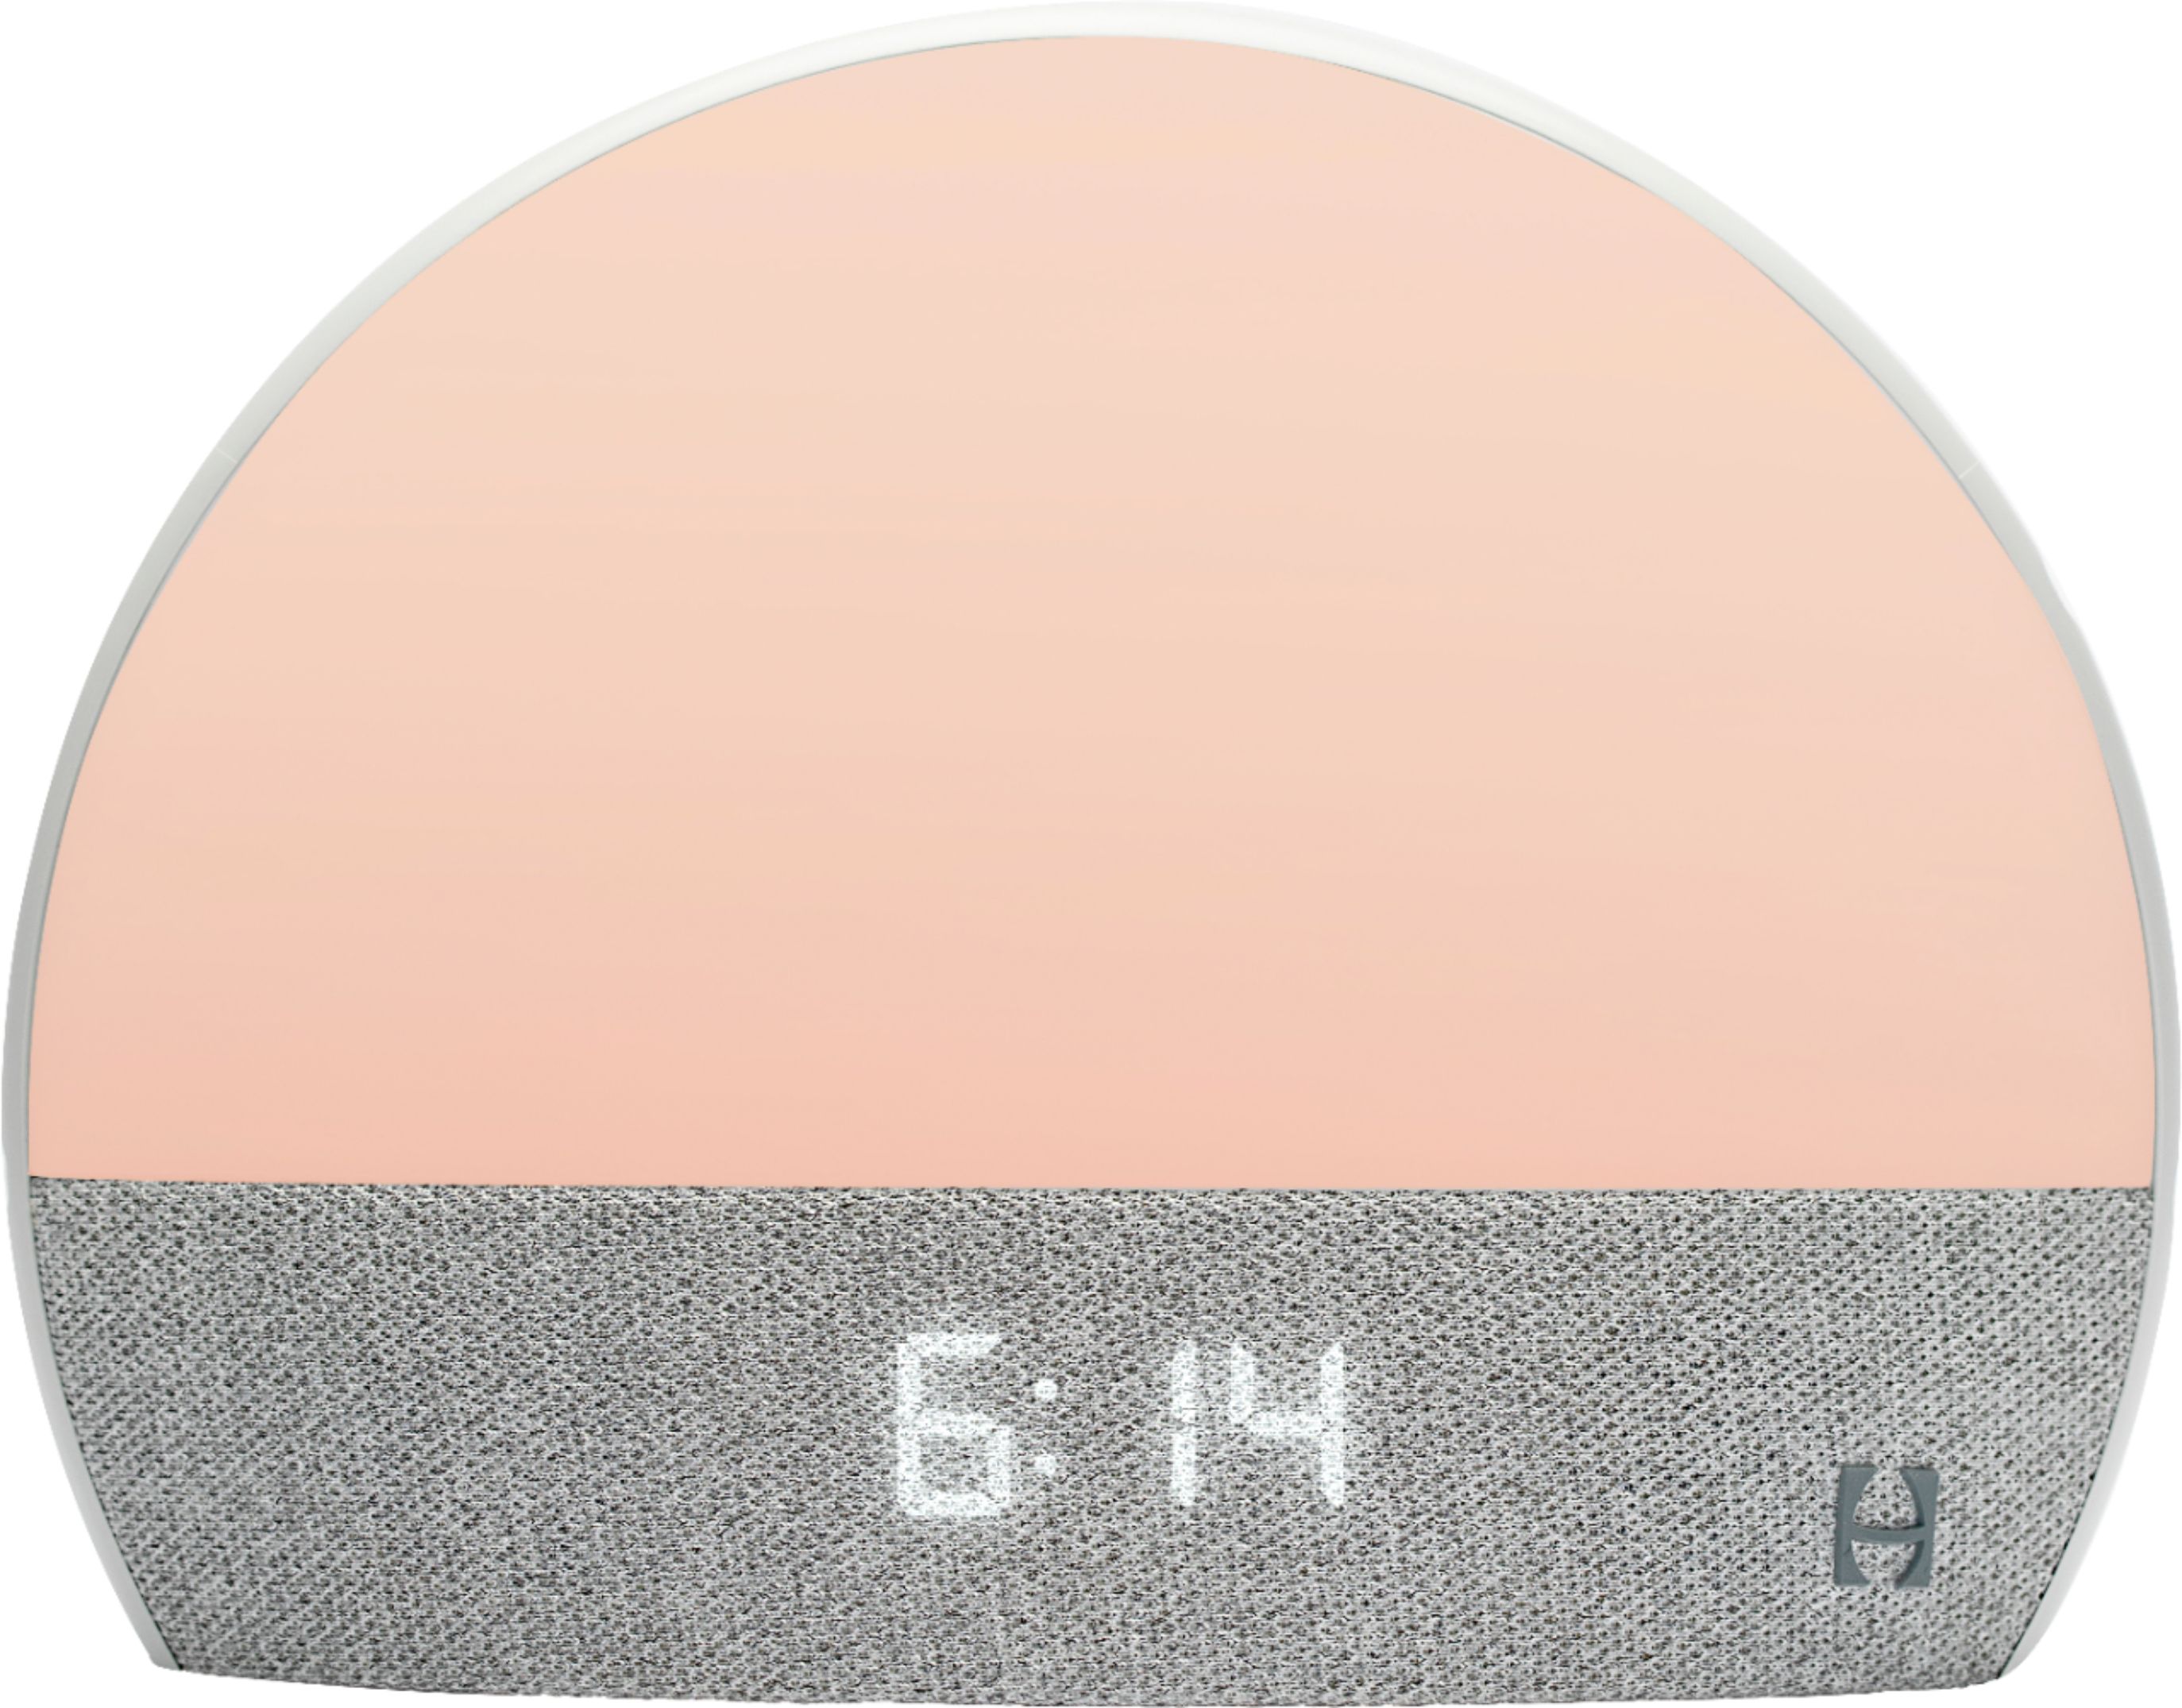 Hatch Restore Sound Machine, Smart Light and Sleep Sounds White HBR4100 -  Best Buy